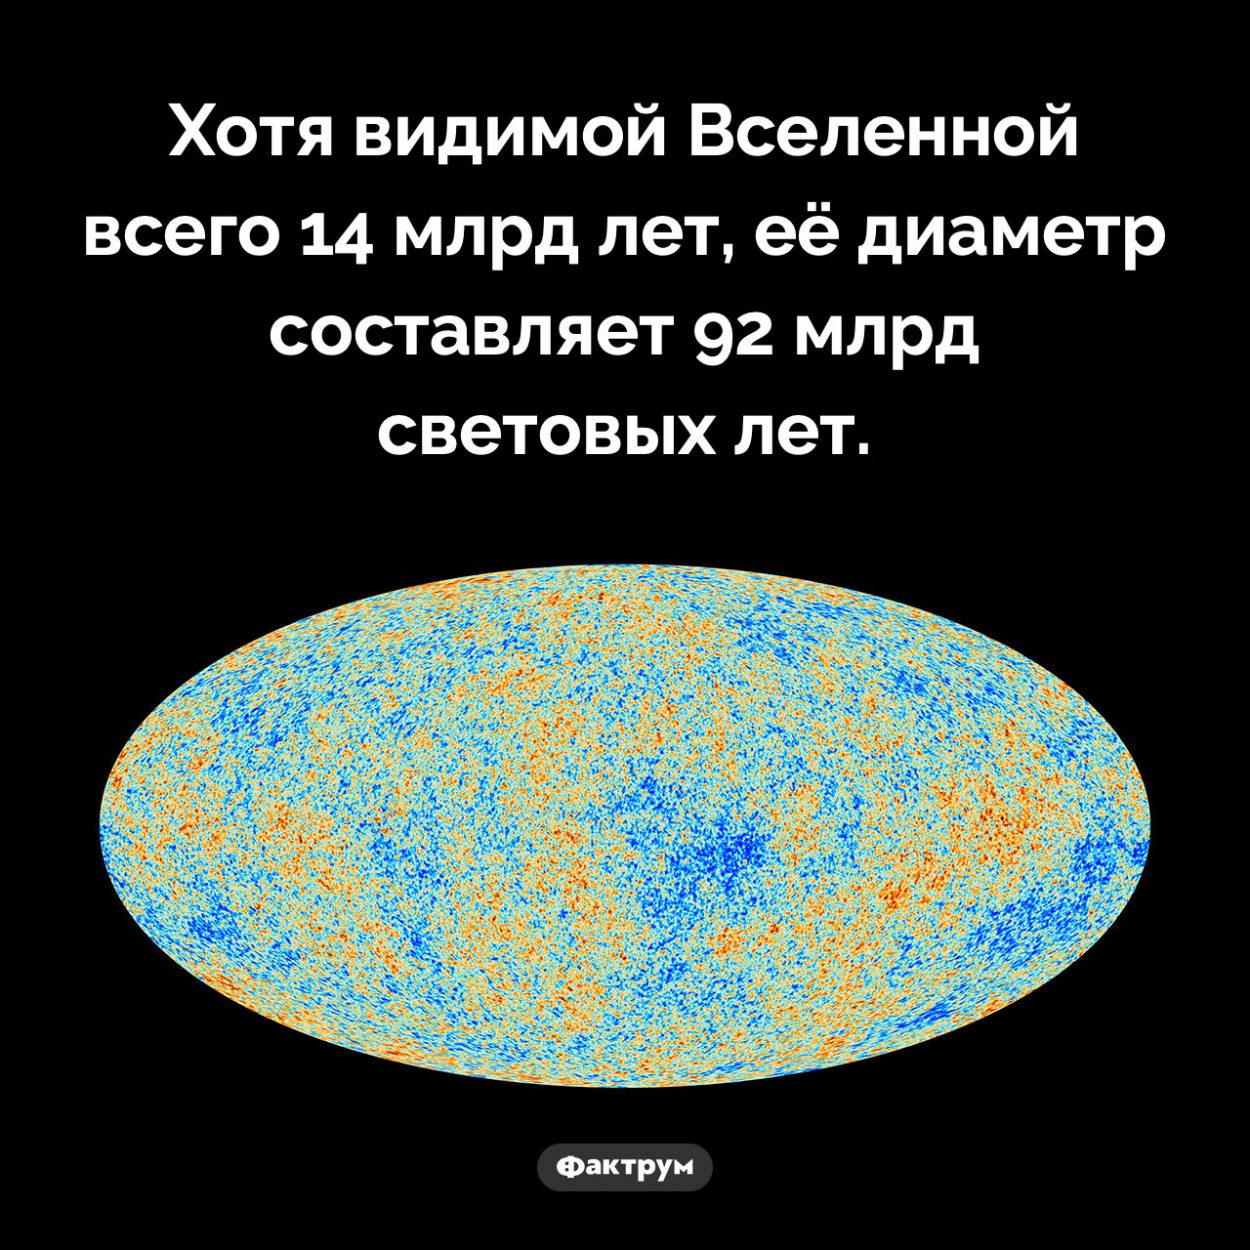 Размер Вселенной. Хотя видимой Вселенной всего 14 млрд лет, её диаметр составляет 92 млрд световых лет.